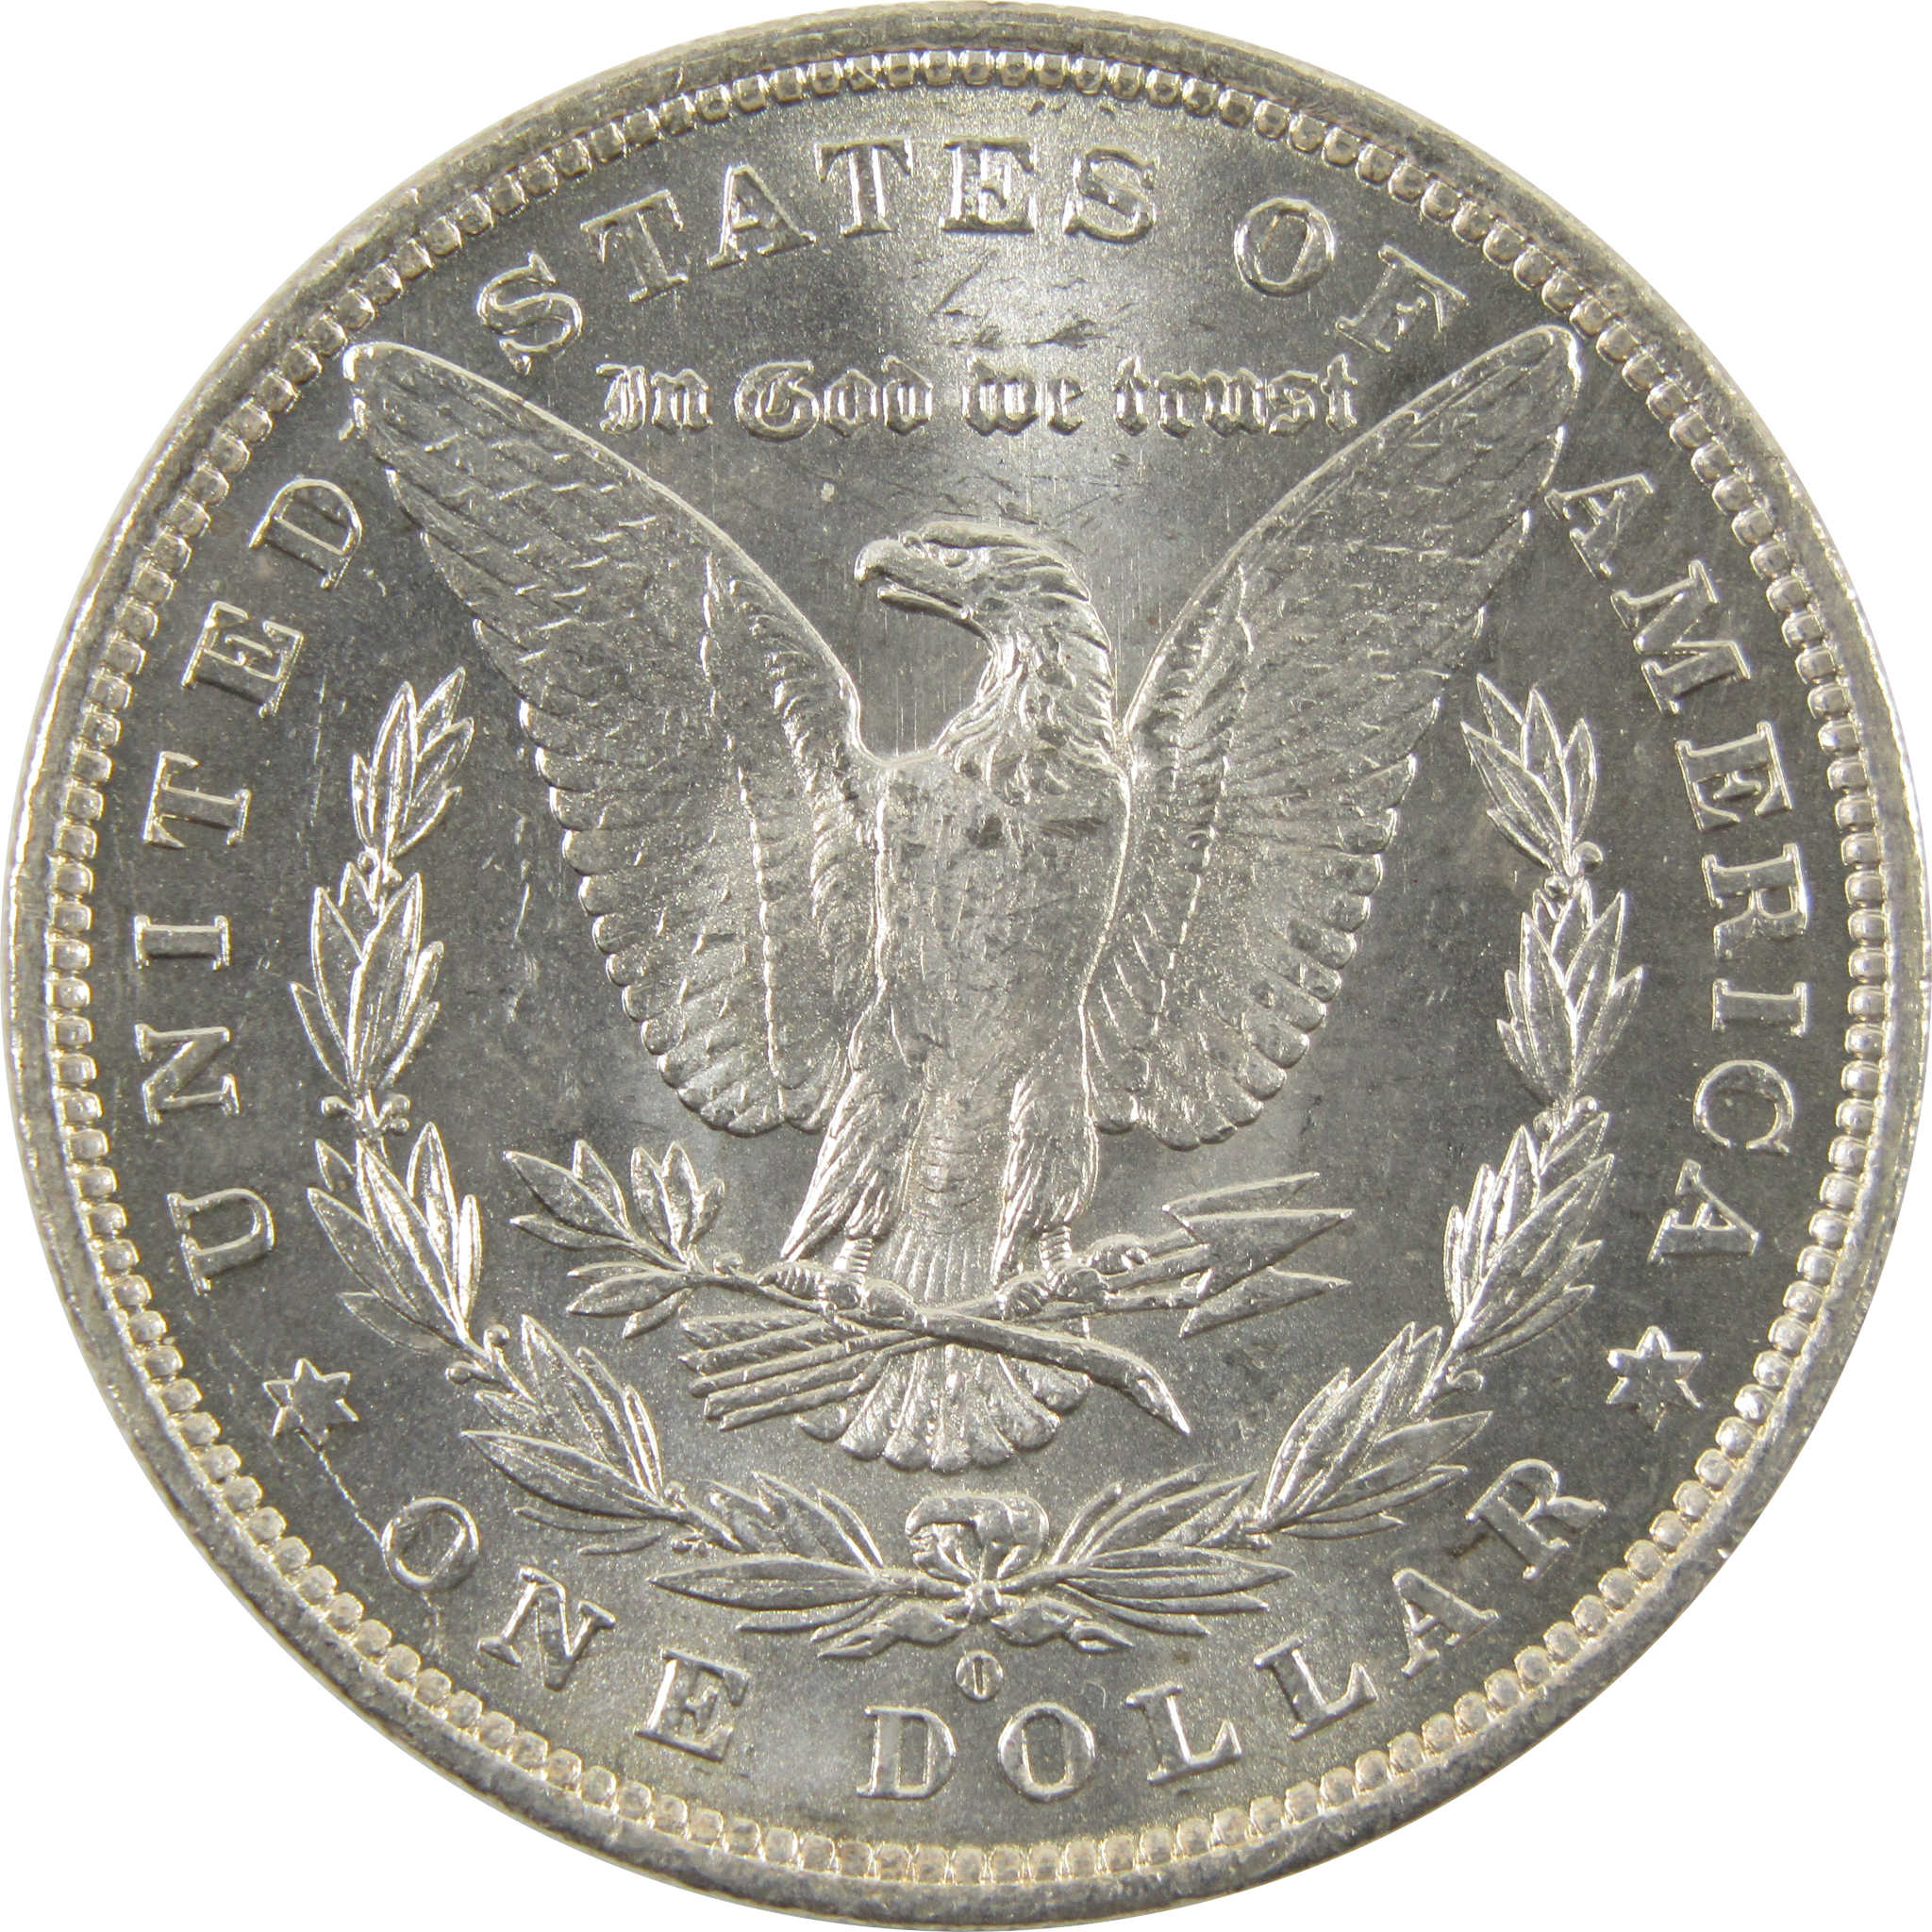 1881 O Morgan Dollar BU Uncirculated 90% Silver $1 Coin SKU:I10427 - Morgan coin - Morgan silver dollar - Morgan silver dollar for sale - Profile Coins &amp; Collectibles